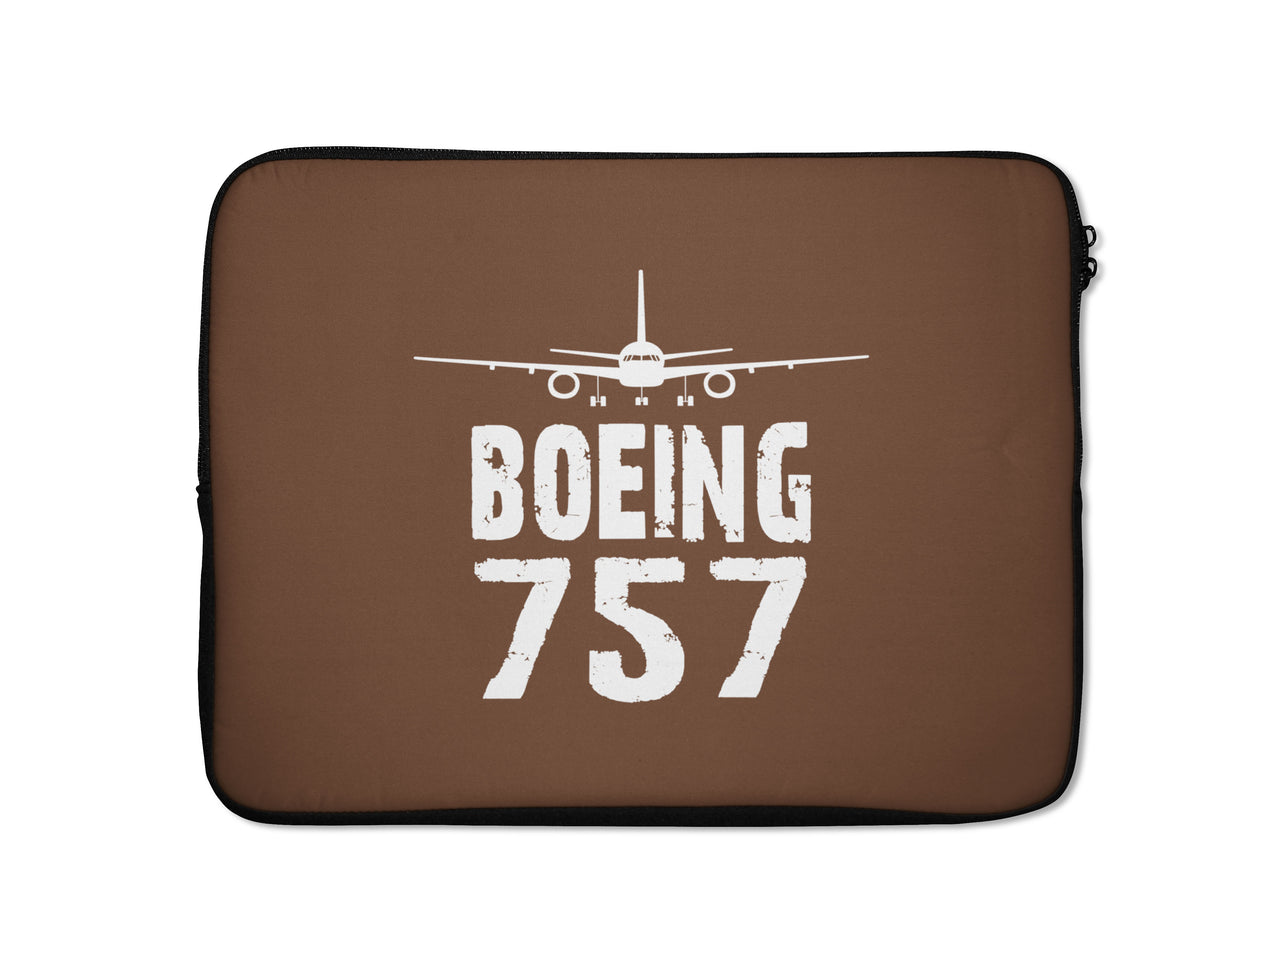 Boeing 757 & Plane Designed Laptop & Tablet Cases